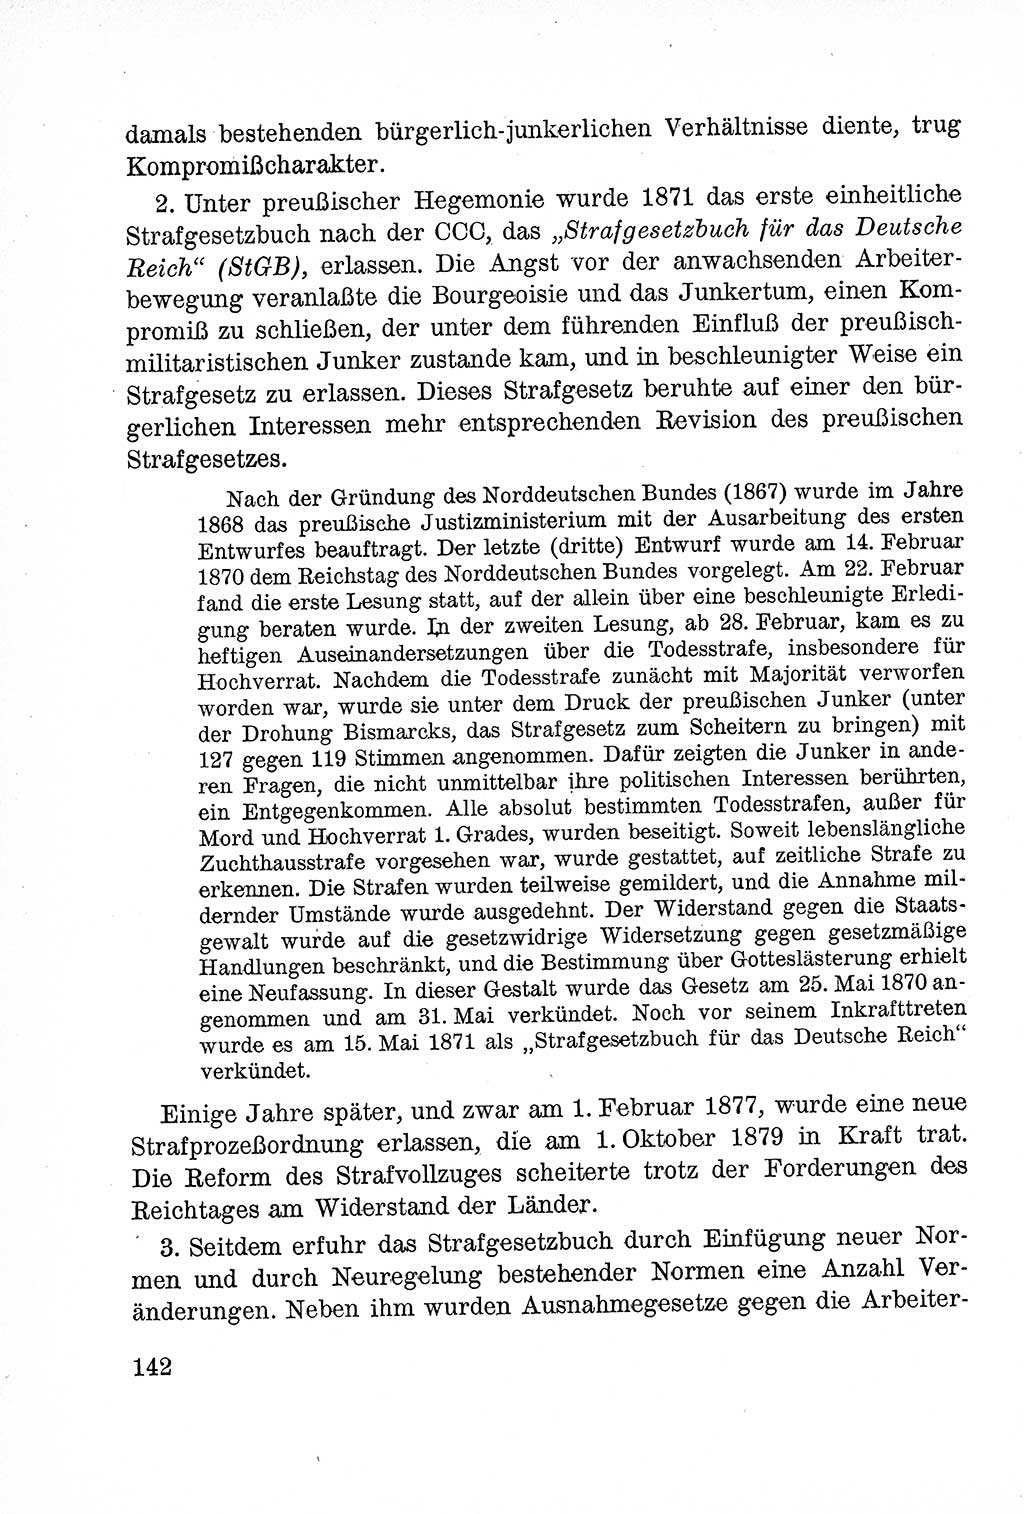 Lehrbuch des Strafrechts der Deutschen Demokratischen Republik (DDR), Allgemeiner Teil 1957, Seite 142 (Lb. Strafr. DDR AT 1957, S. 142)